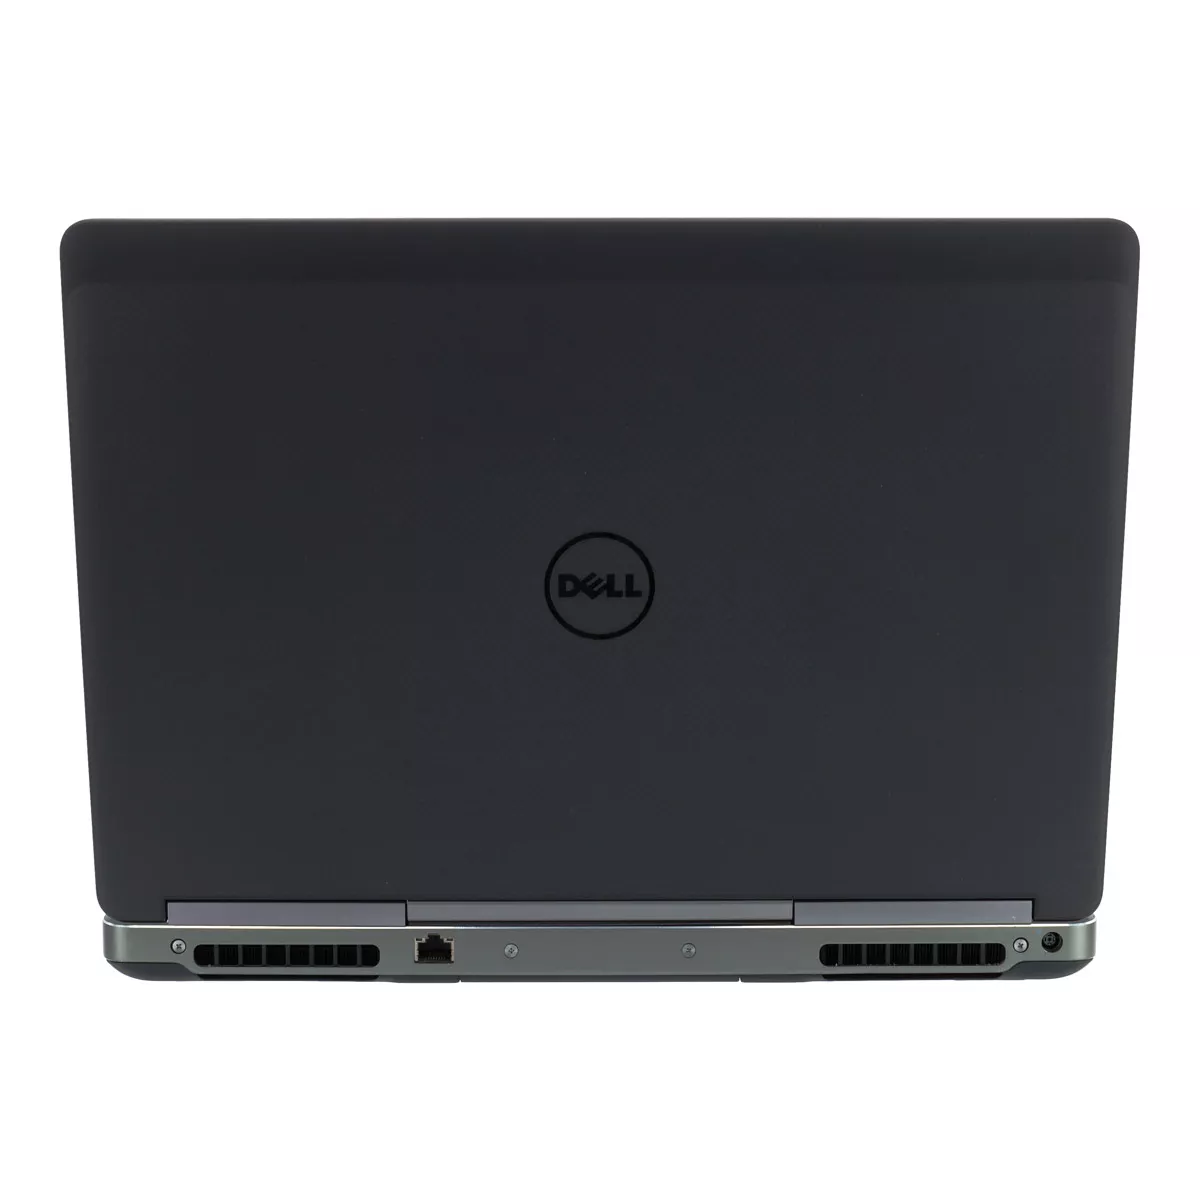 Dell Precision 7520 Core i7 7820HQ nVidia Quadro M1200M 32 GB 500 GB M.2 nVME SSD Webcam A